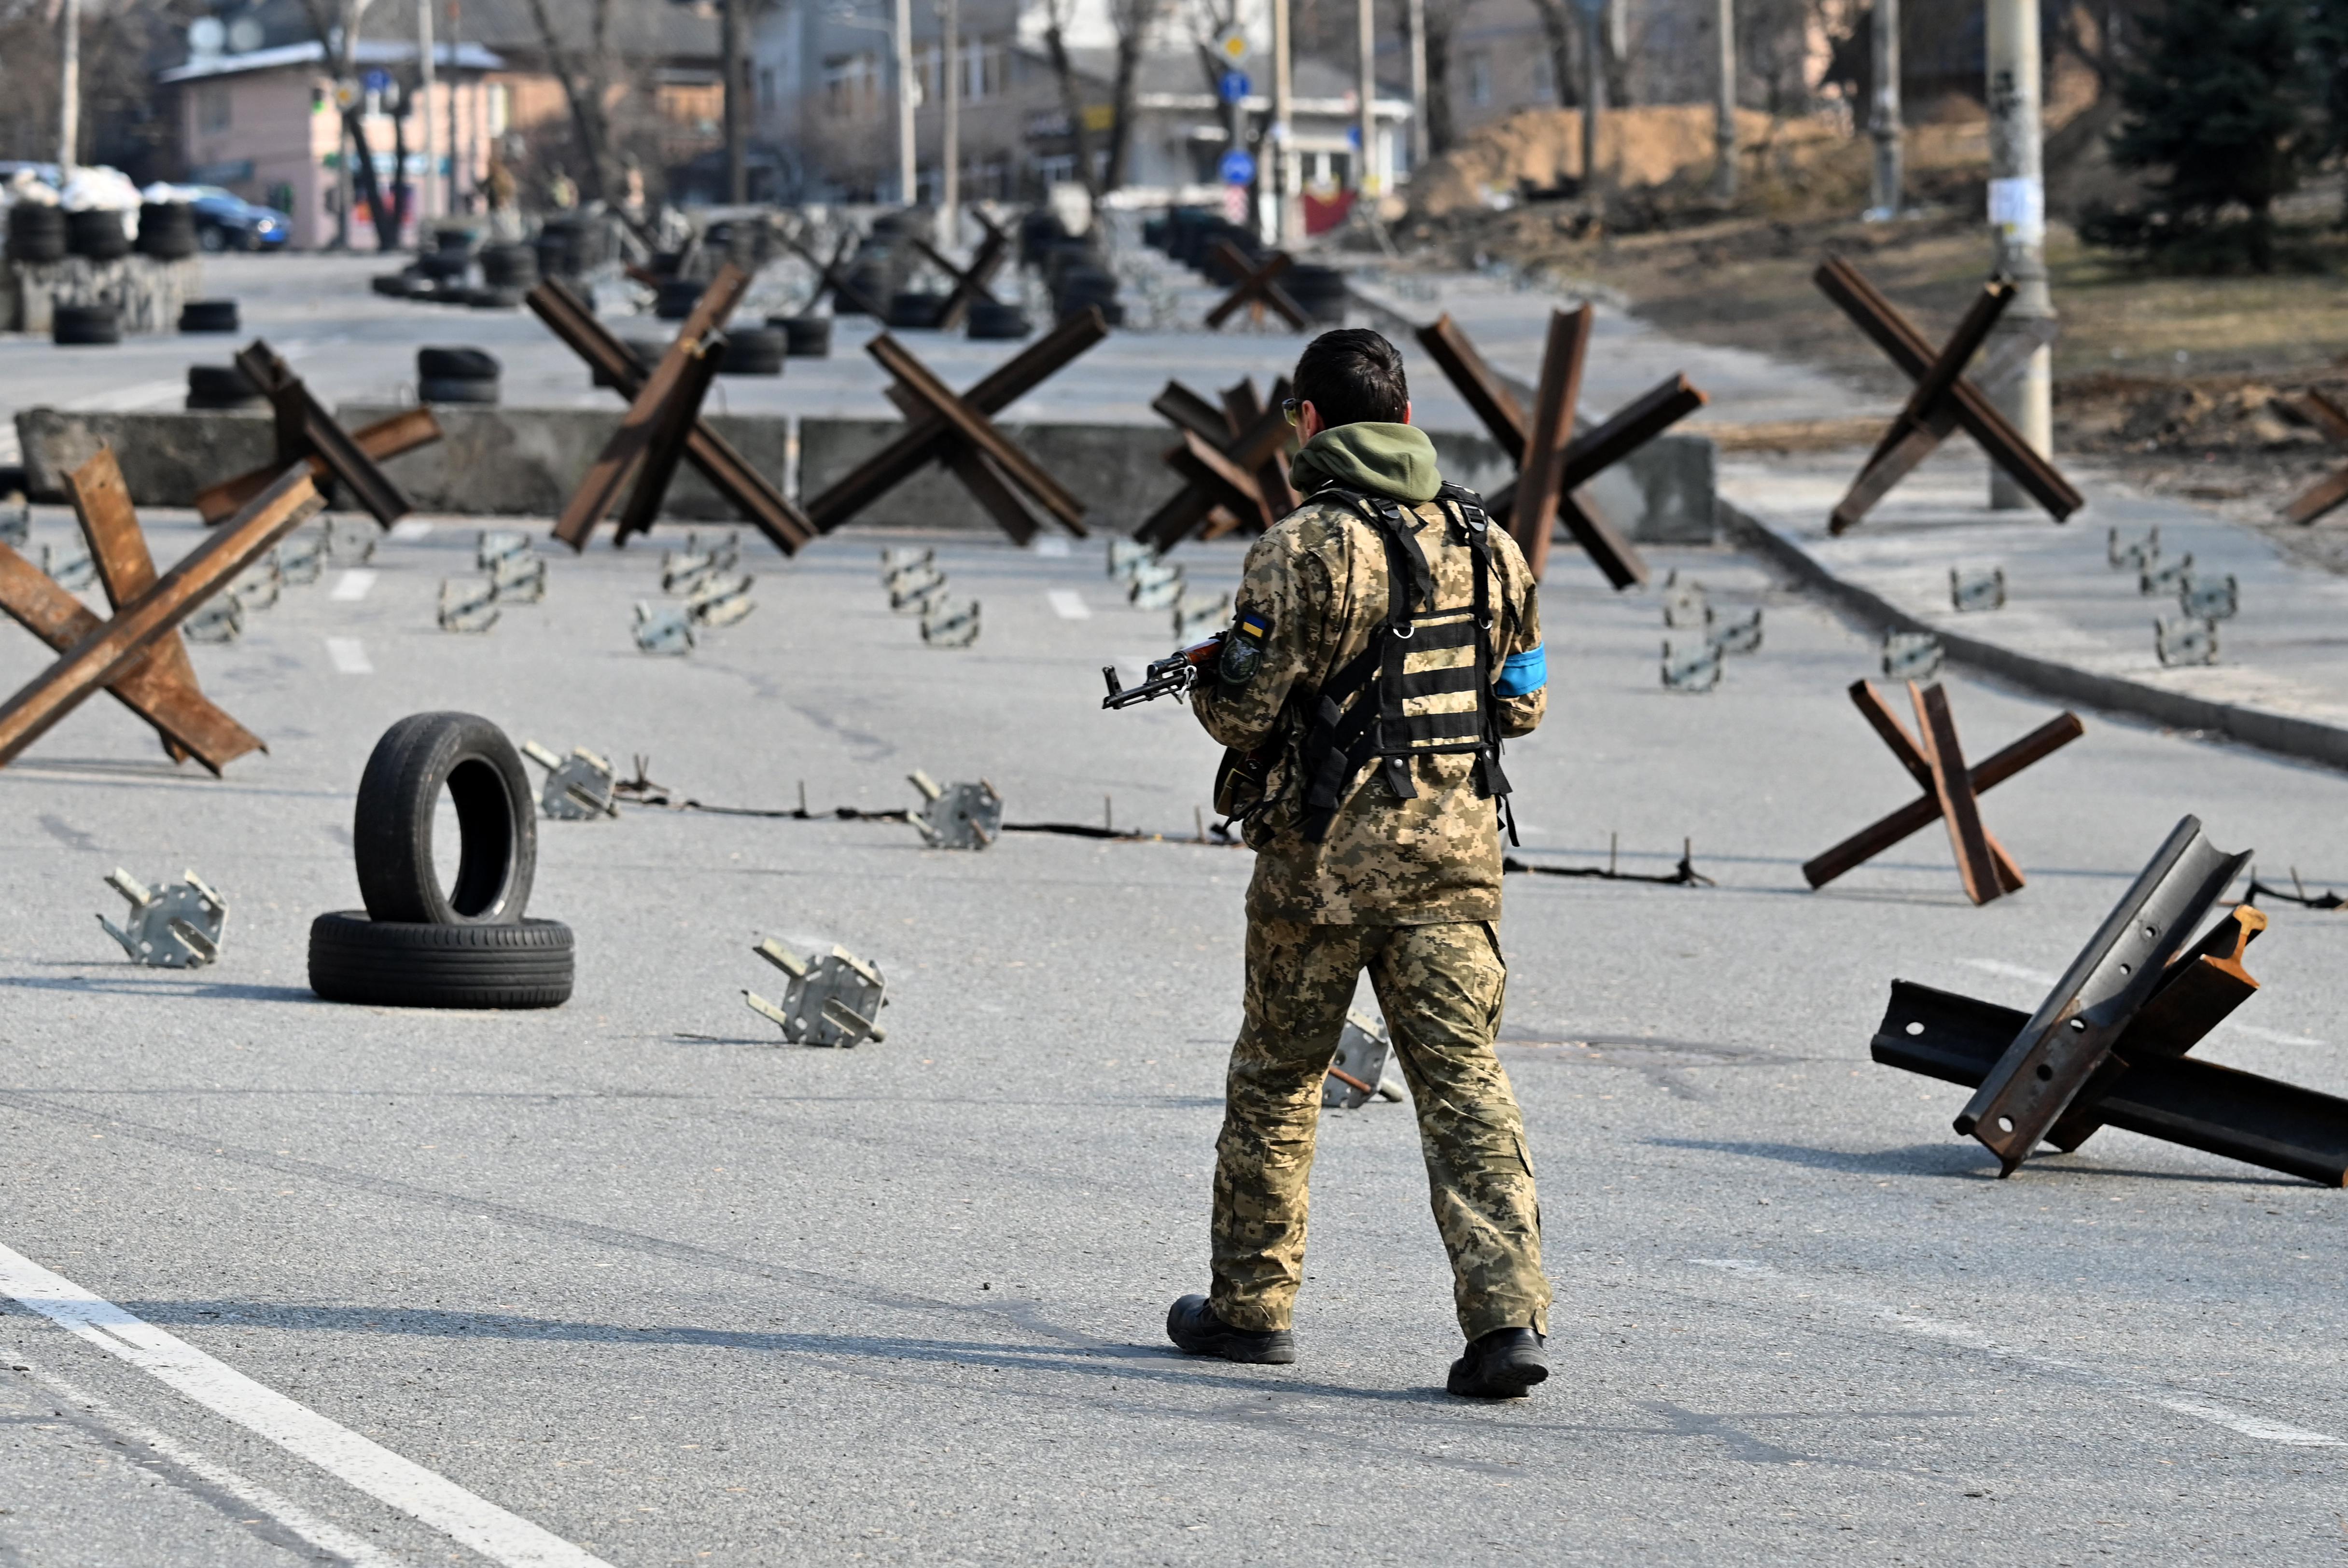 Guerra Ucraina-Russia live, ultime notizie oggi: news ultima ora 29 marzo